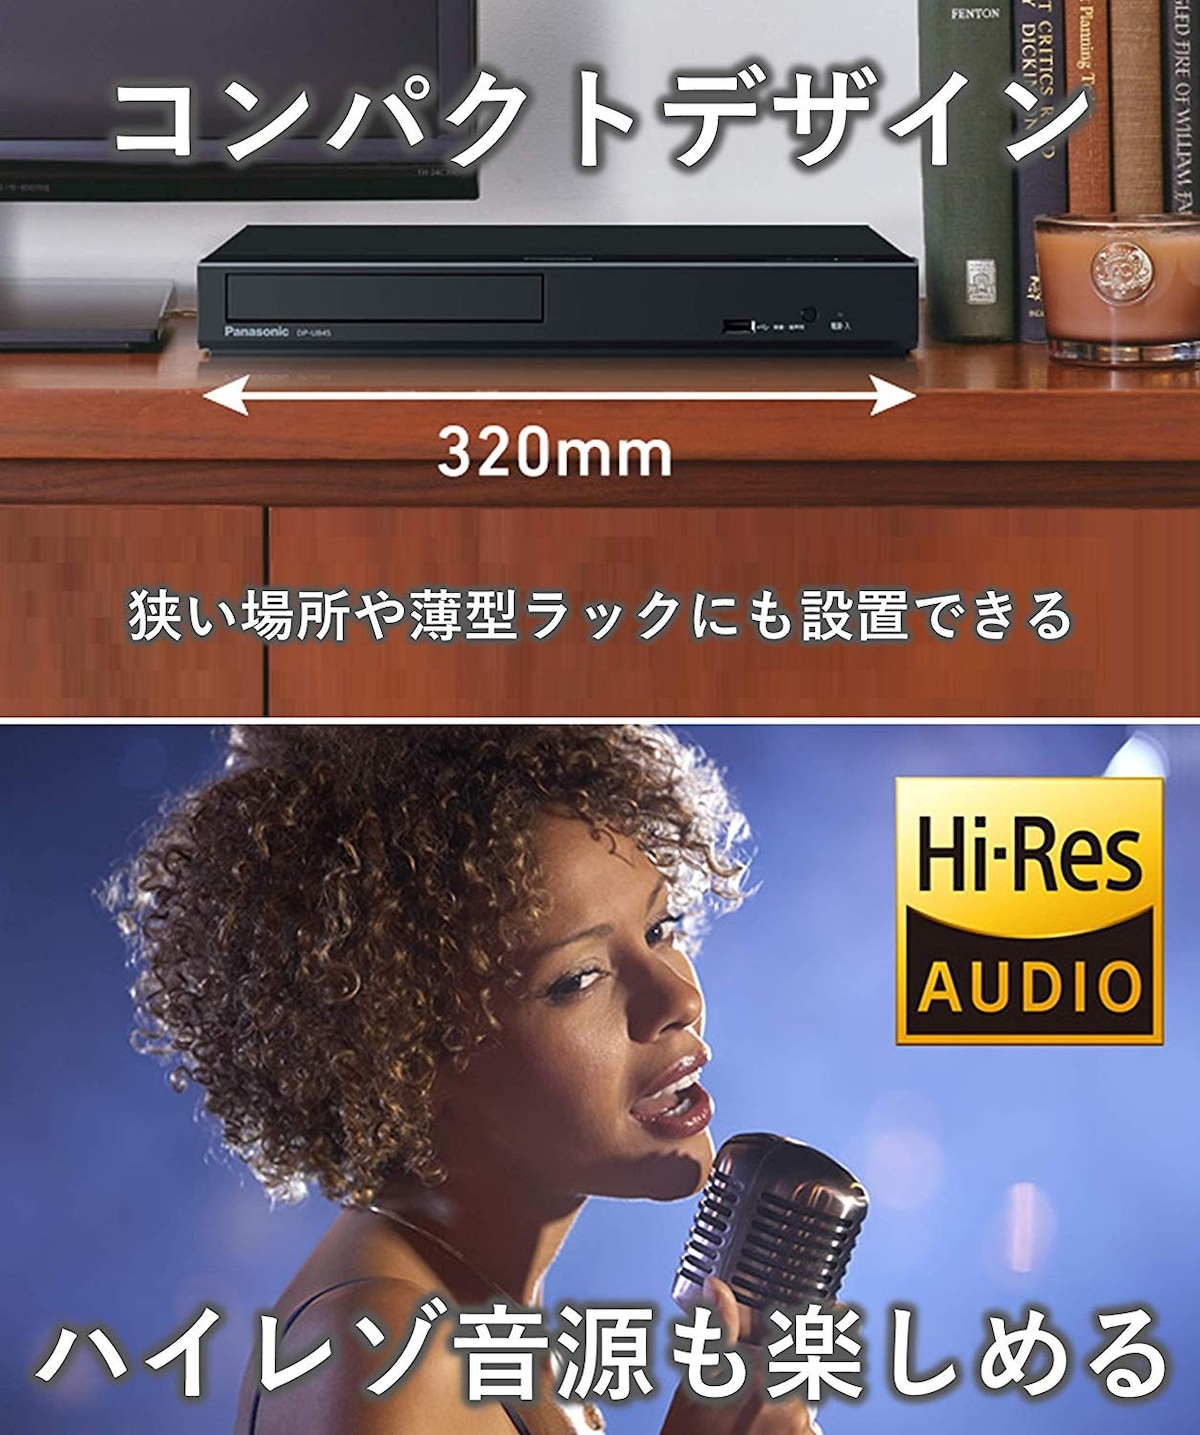  ブルーレイプレーヤー HDR10+ DolbyVision対応画像2 